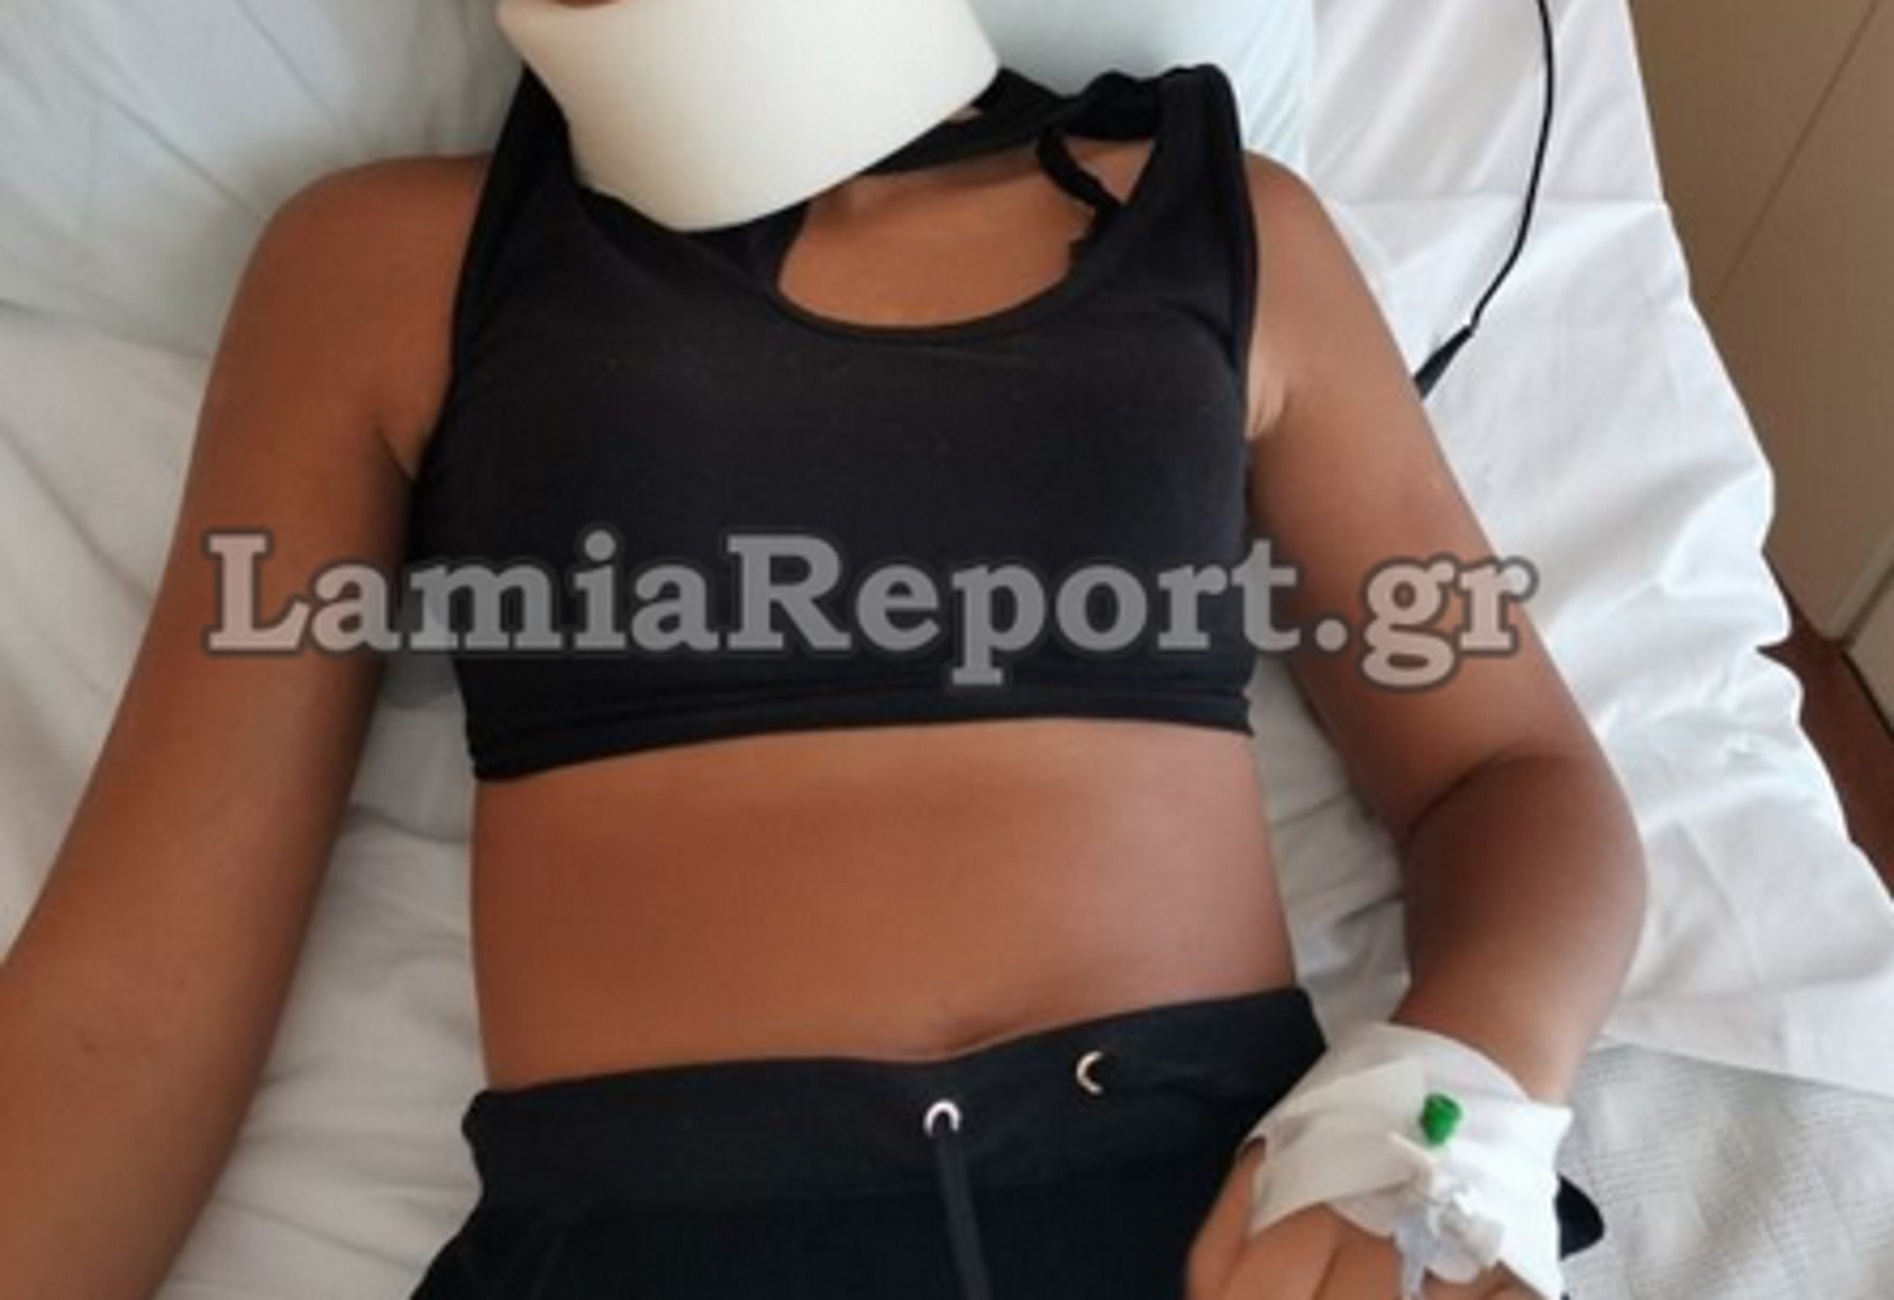 Λύτρας στο newsit.gr: Έτσι έγινε η επίθεση στην 13χρονη! Την χτυπούσαν με μανία επί 15 λεπτά